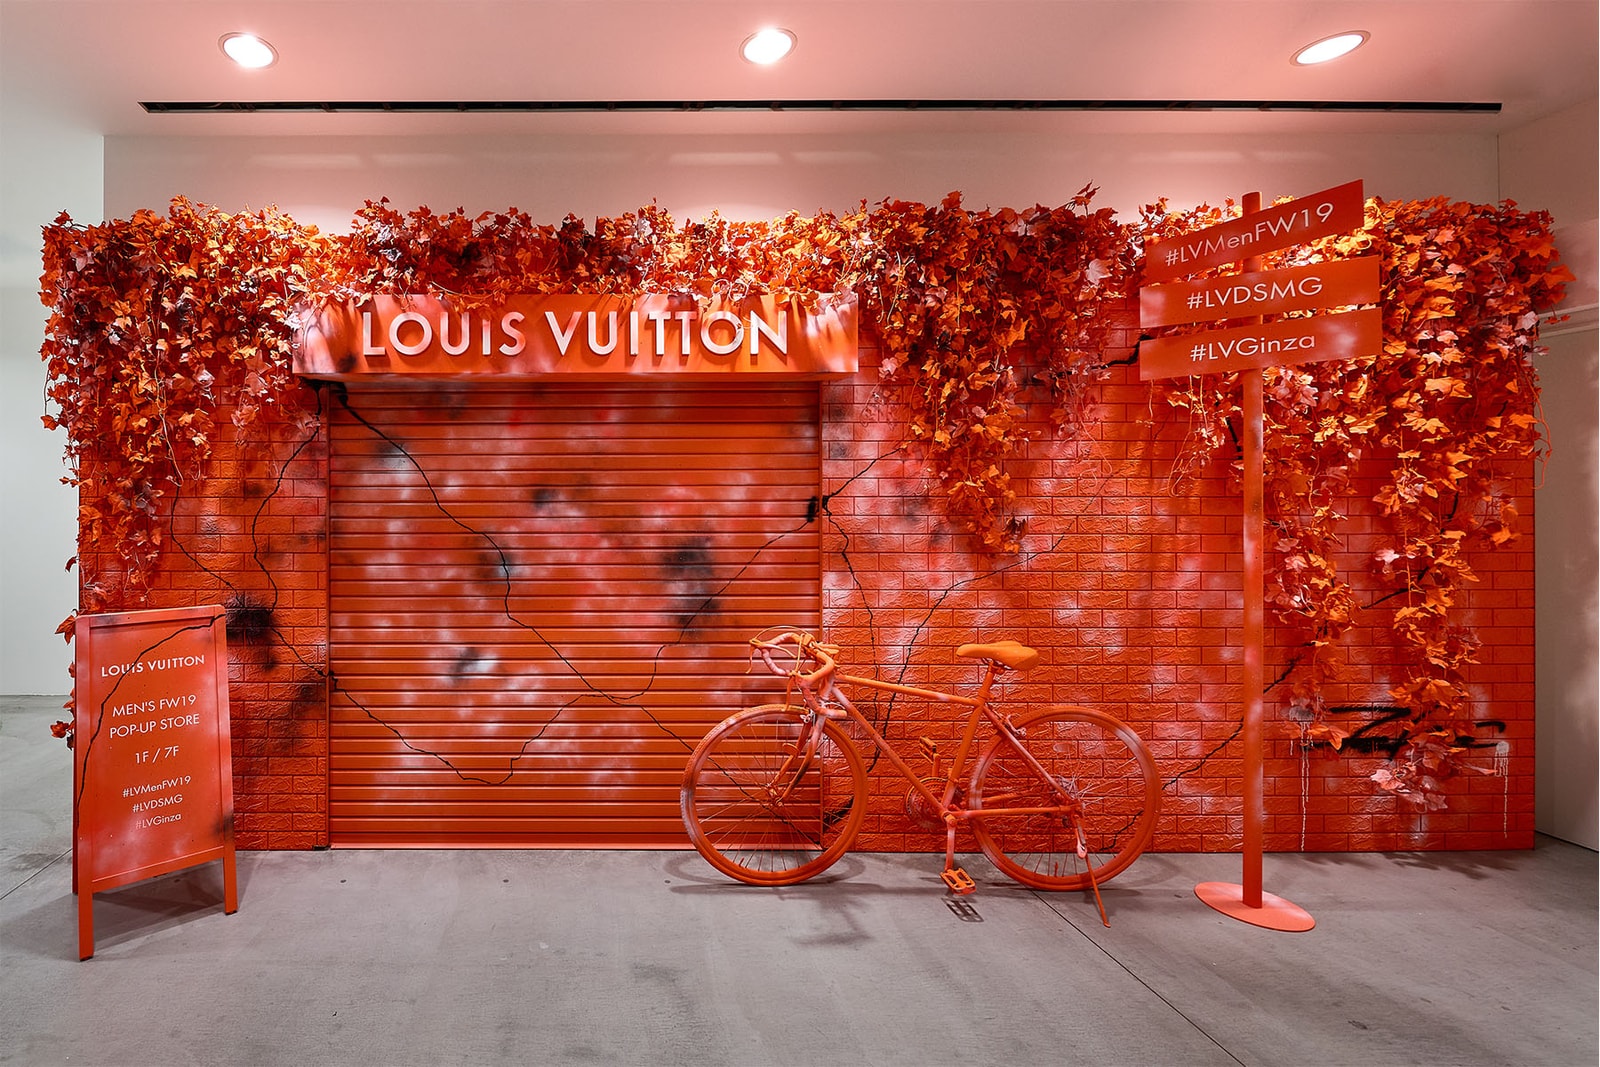 ルイ・ヴィトン ドーバーストリートマーケット 銀座 DOVER STREET MARKET GINZA で現在開催中の Louis Vuitton ポップアップの内部を公開